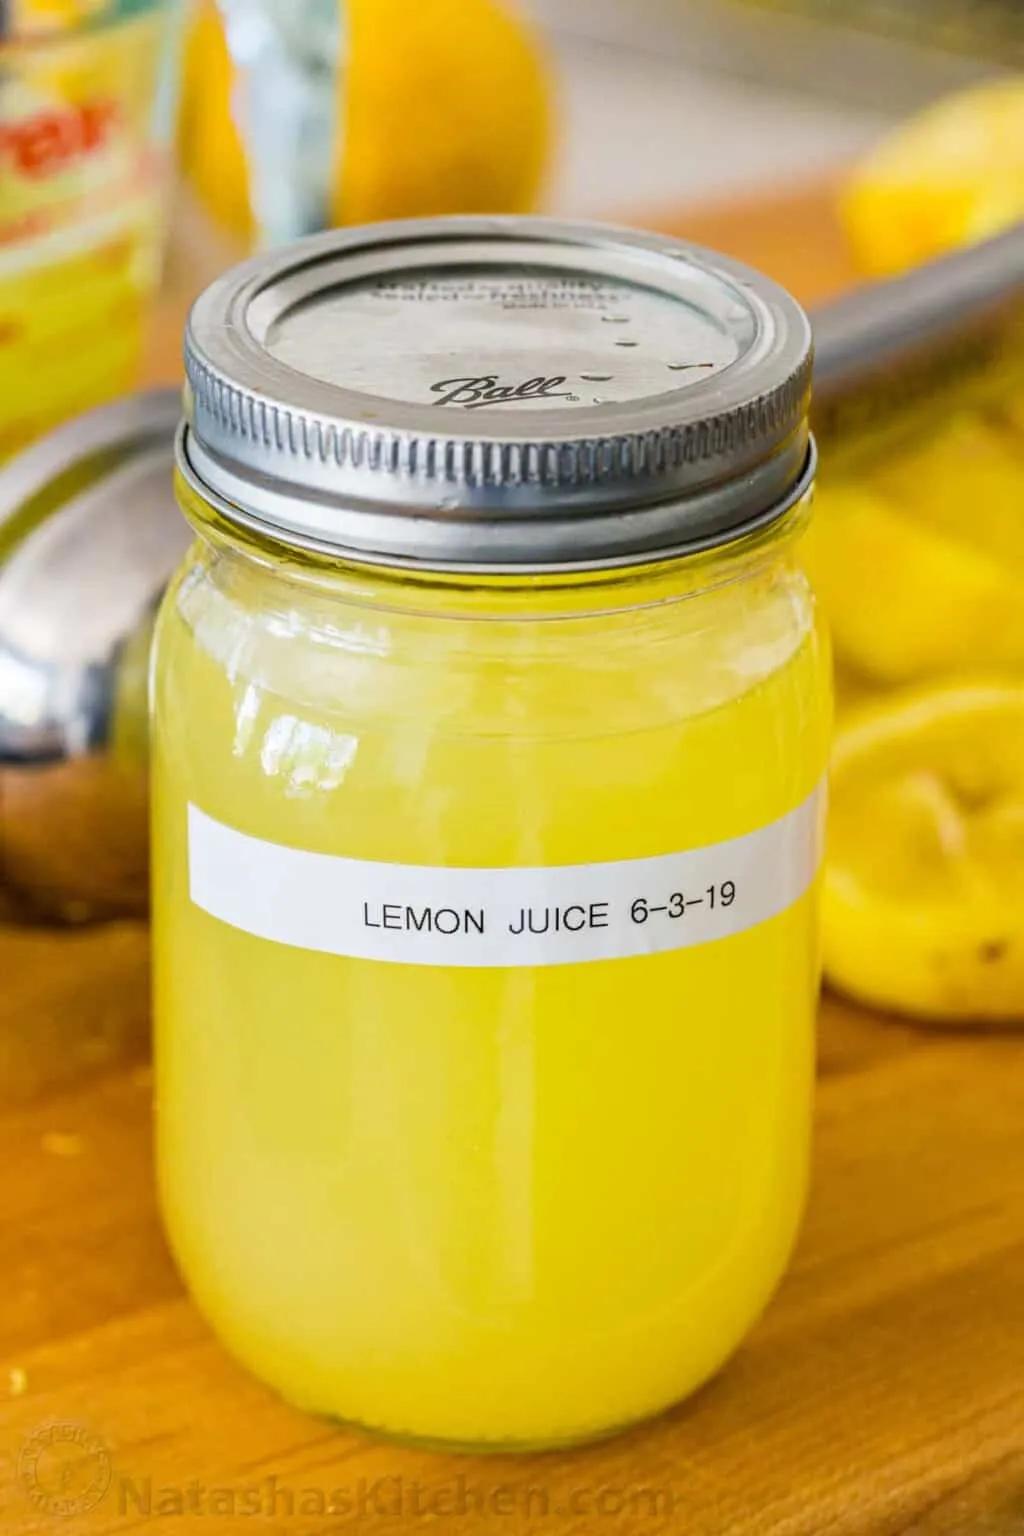 What to do with Lemons (Zesting, Juicing, Freezing) - NatashasKitchen.com